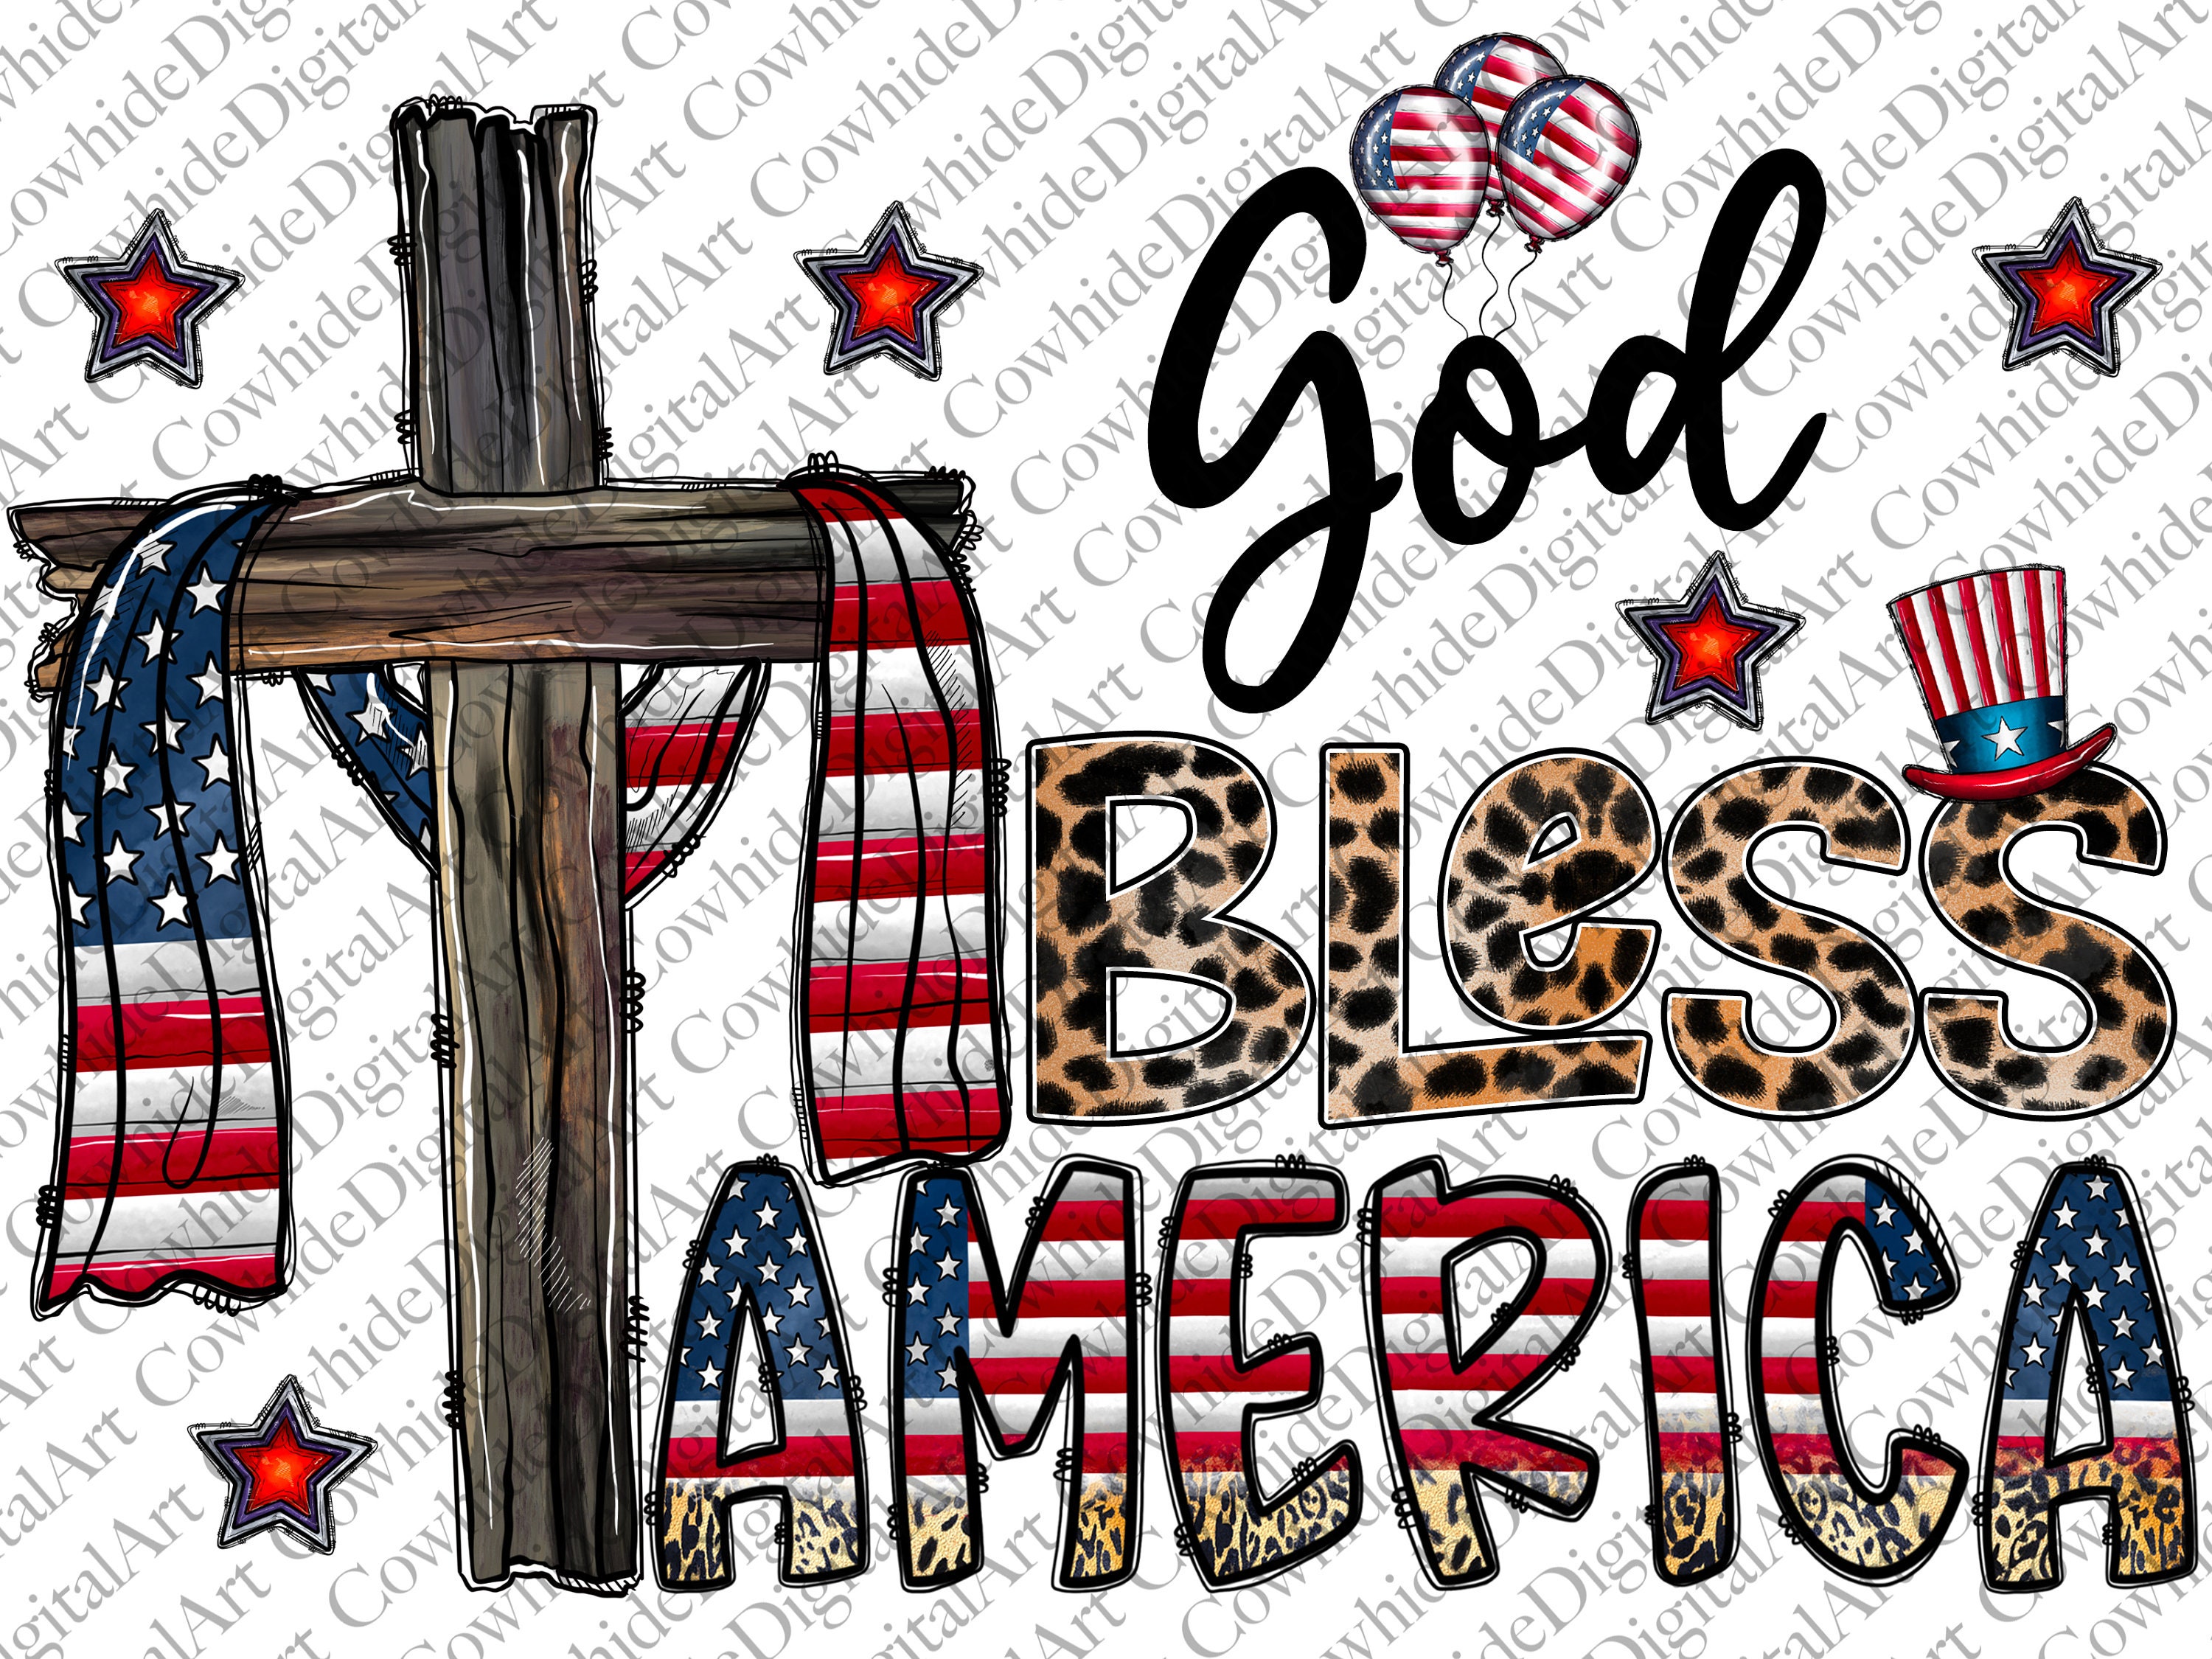 God Bless America PNG File, Sublimation Designs Download, Digital